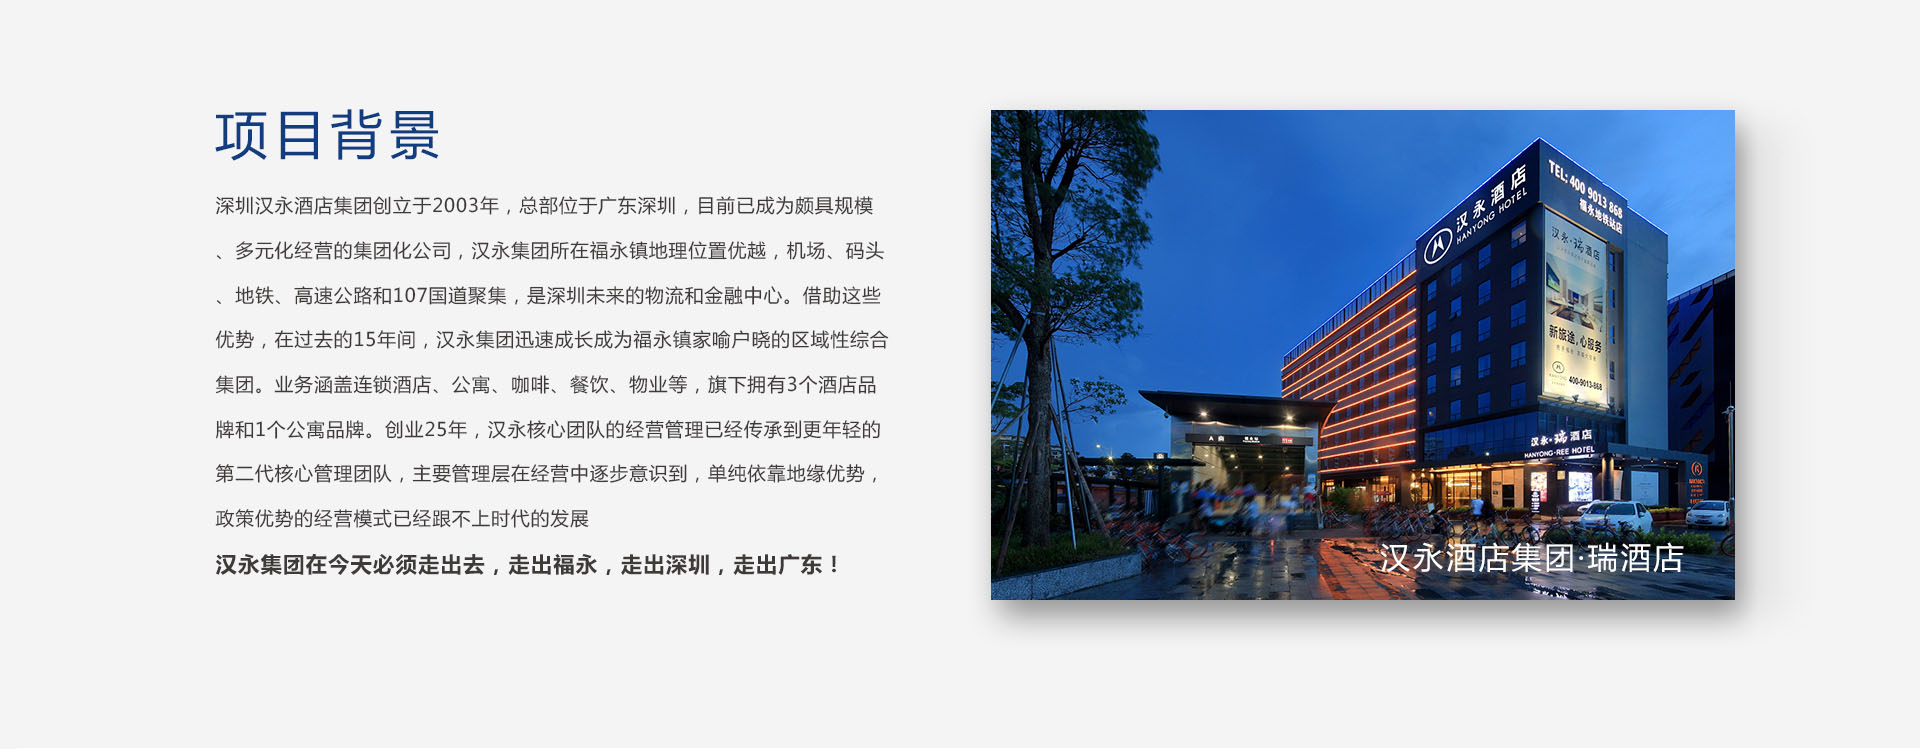 深圳汉永酒店月饼包装设计作品案例欣赏